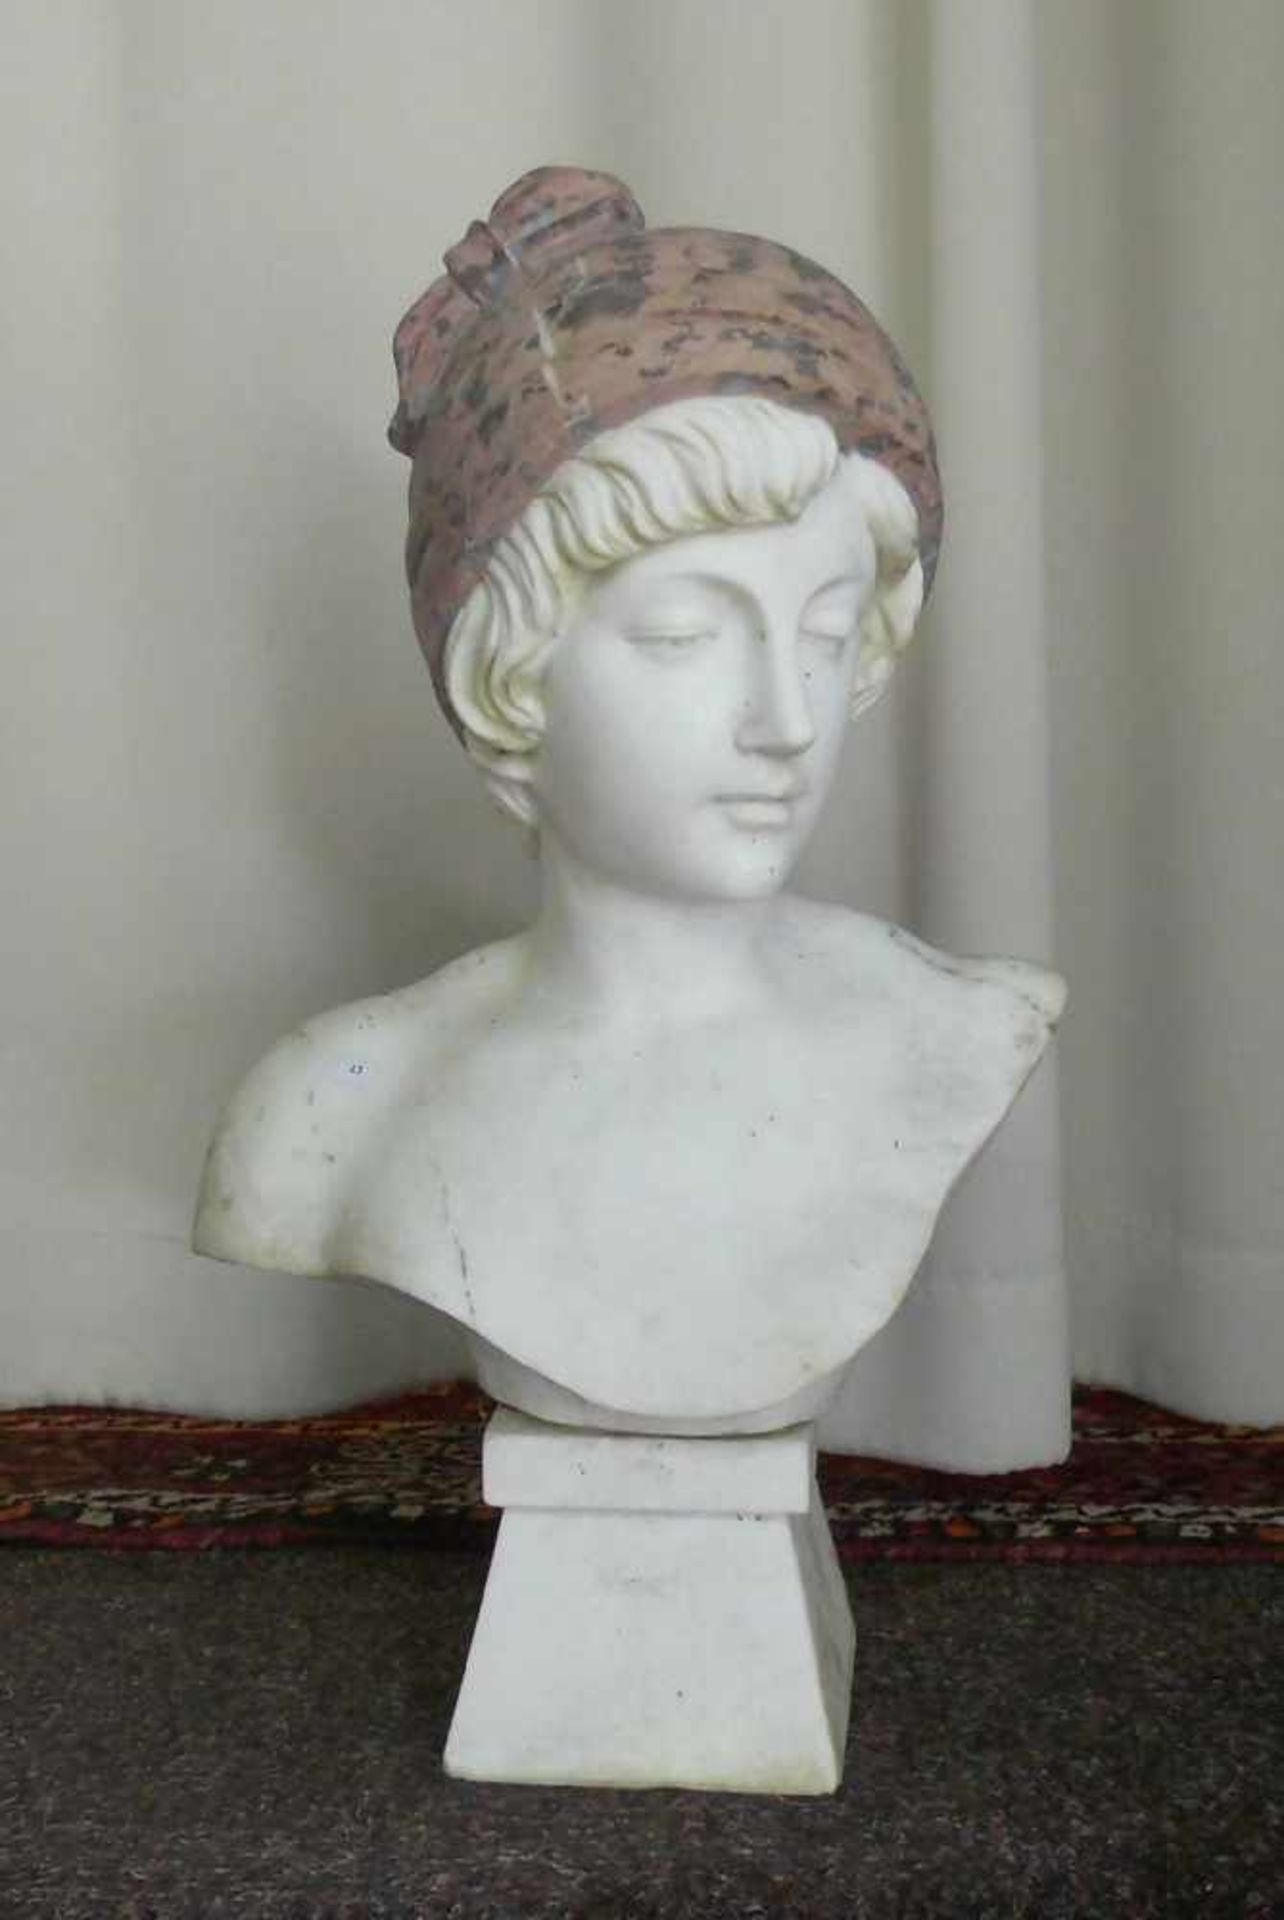 ANONYMUS (20. Jh.), Skulptur: "Büste einer Orientalin", vollplastische Darstellung einer jungen Frau